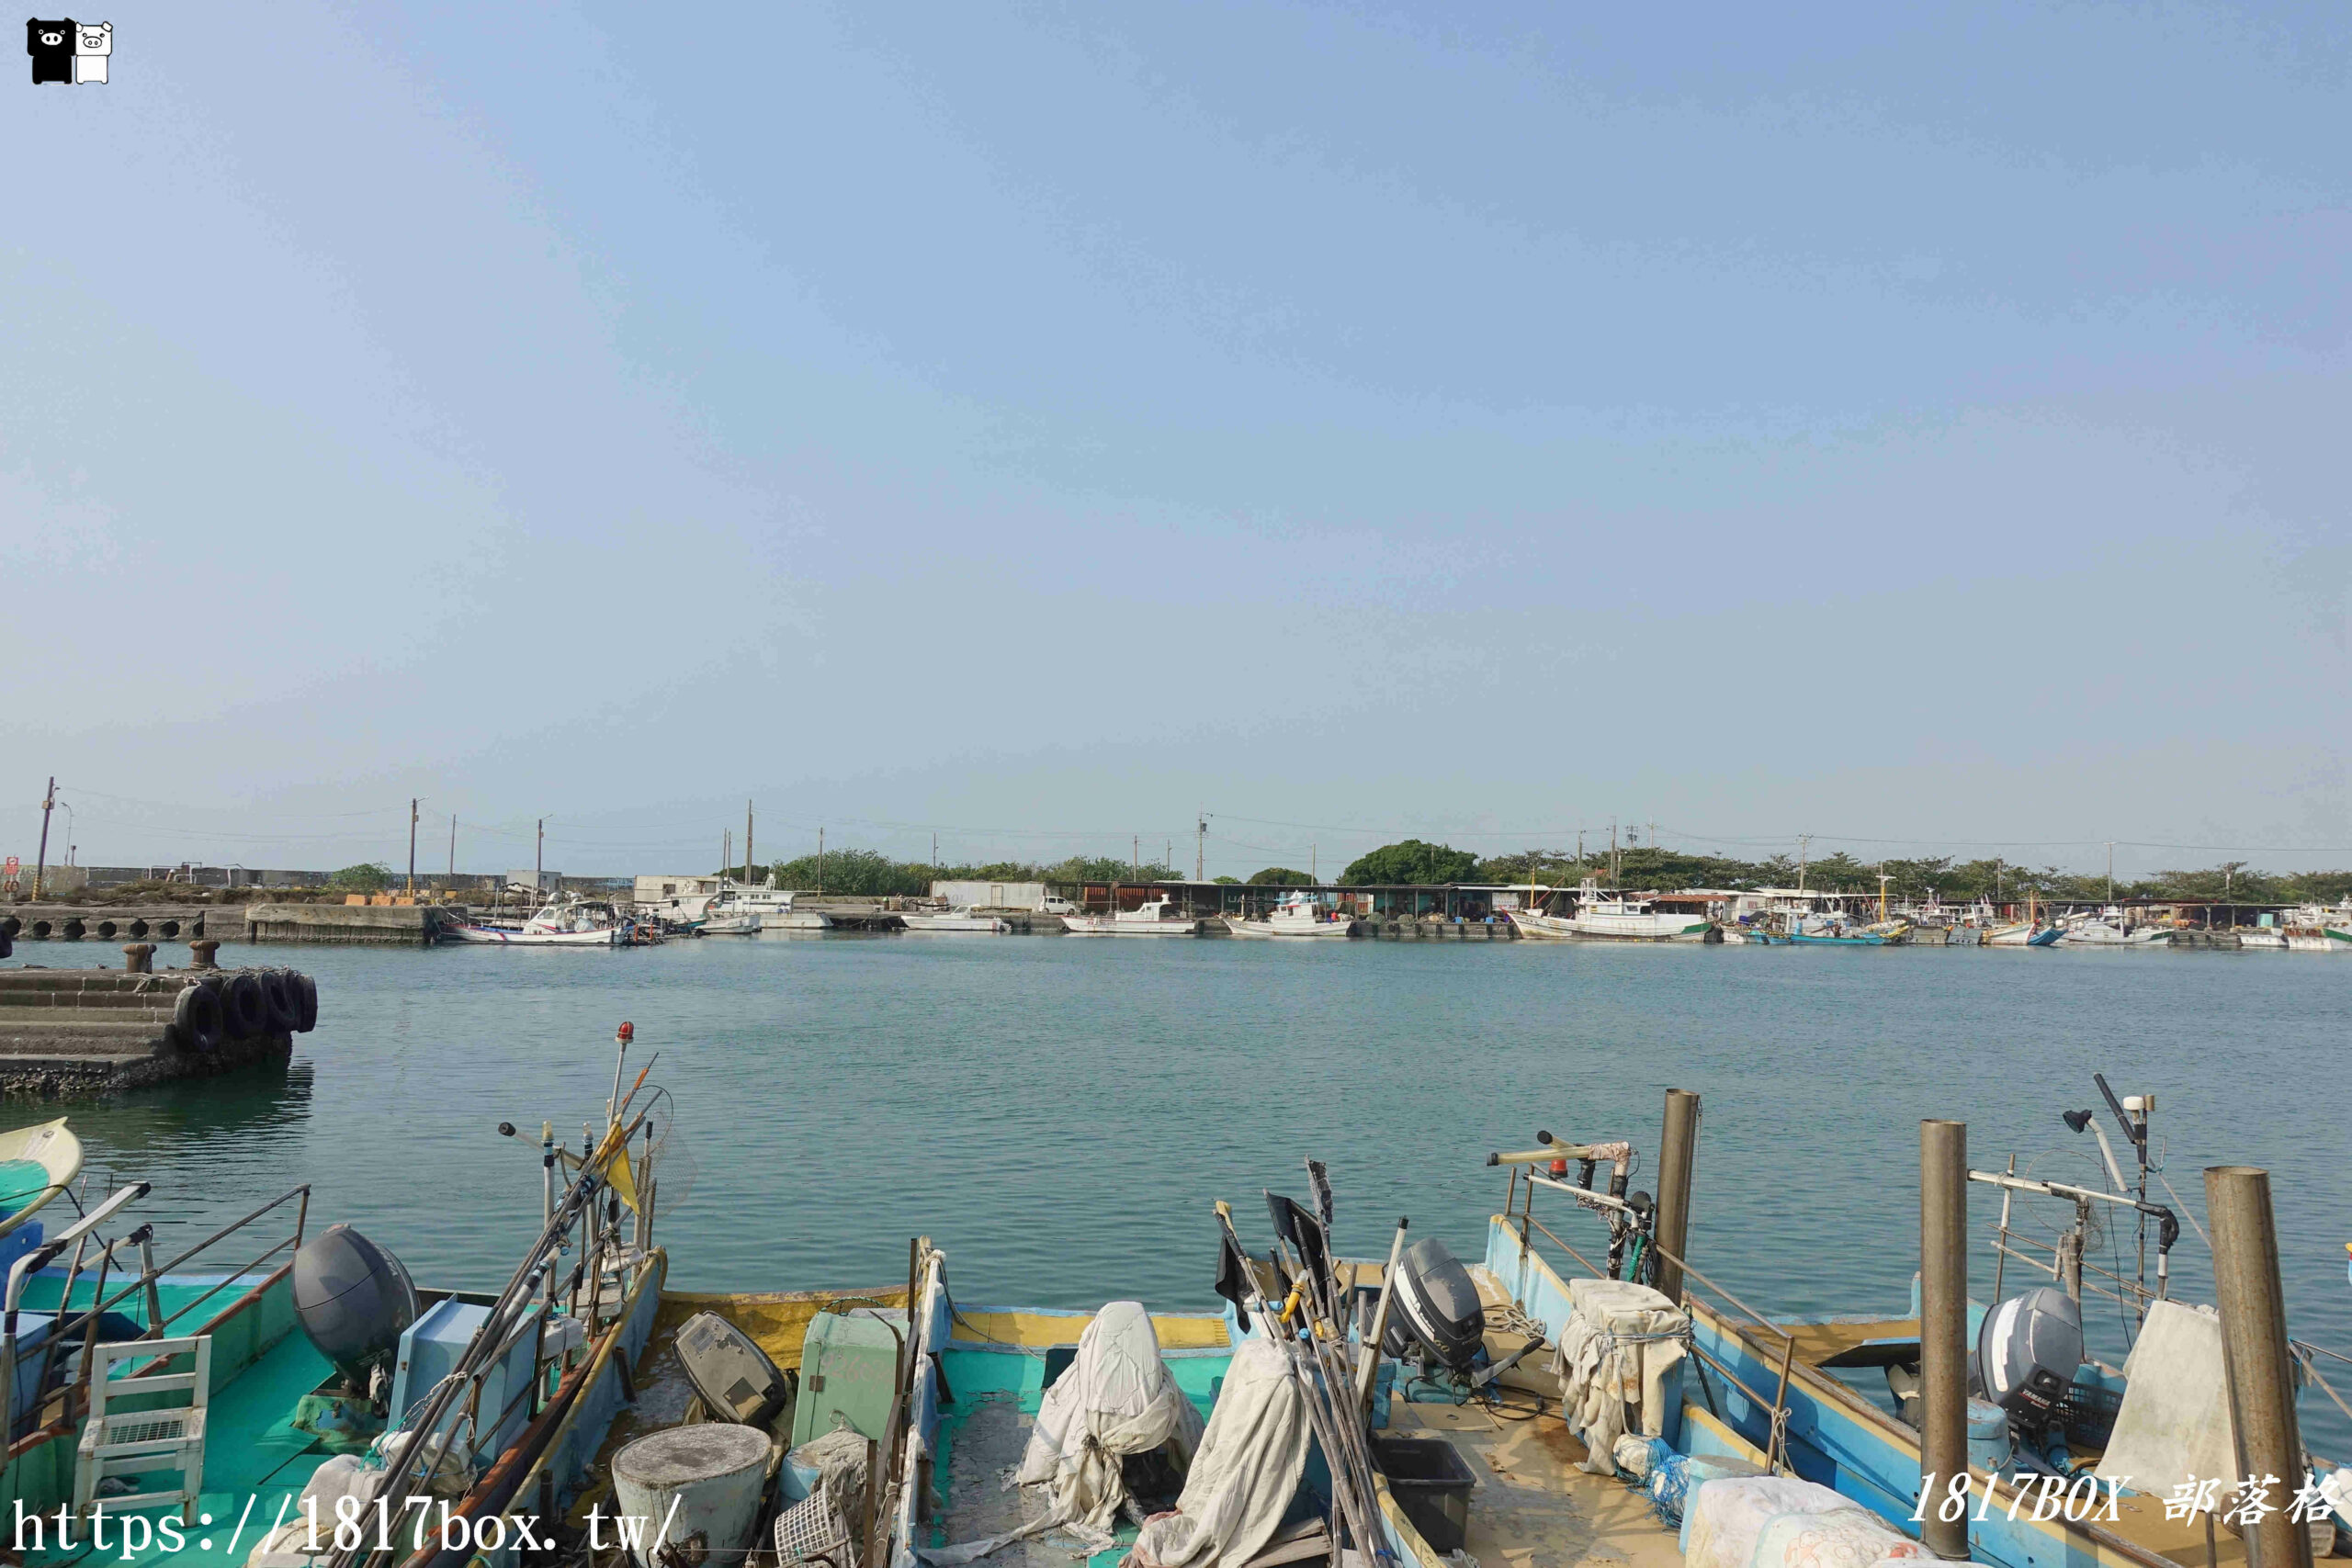 【高雄。彌陀】南寮漁港。彌陀漁港。十大魅力漁港之一 @1817BOX部落格